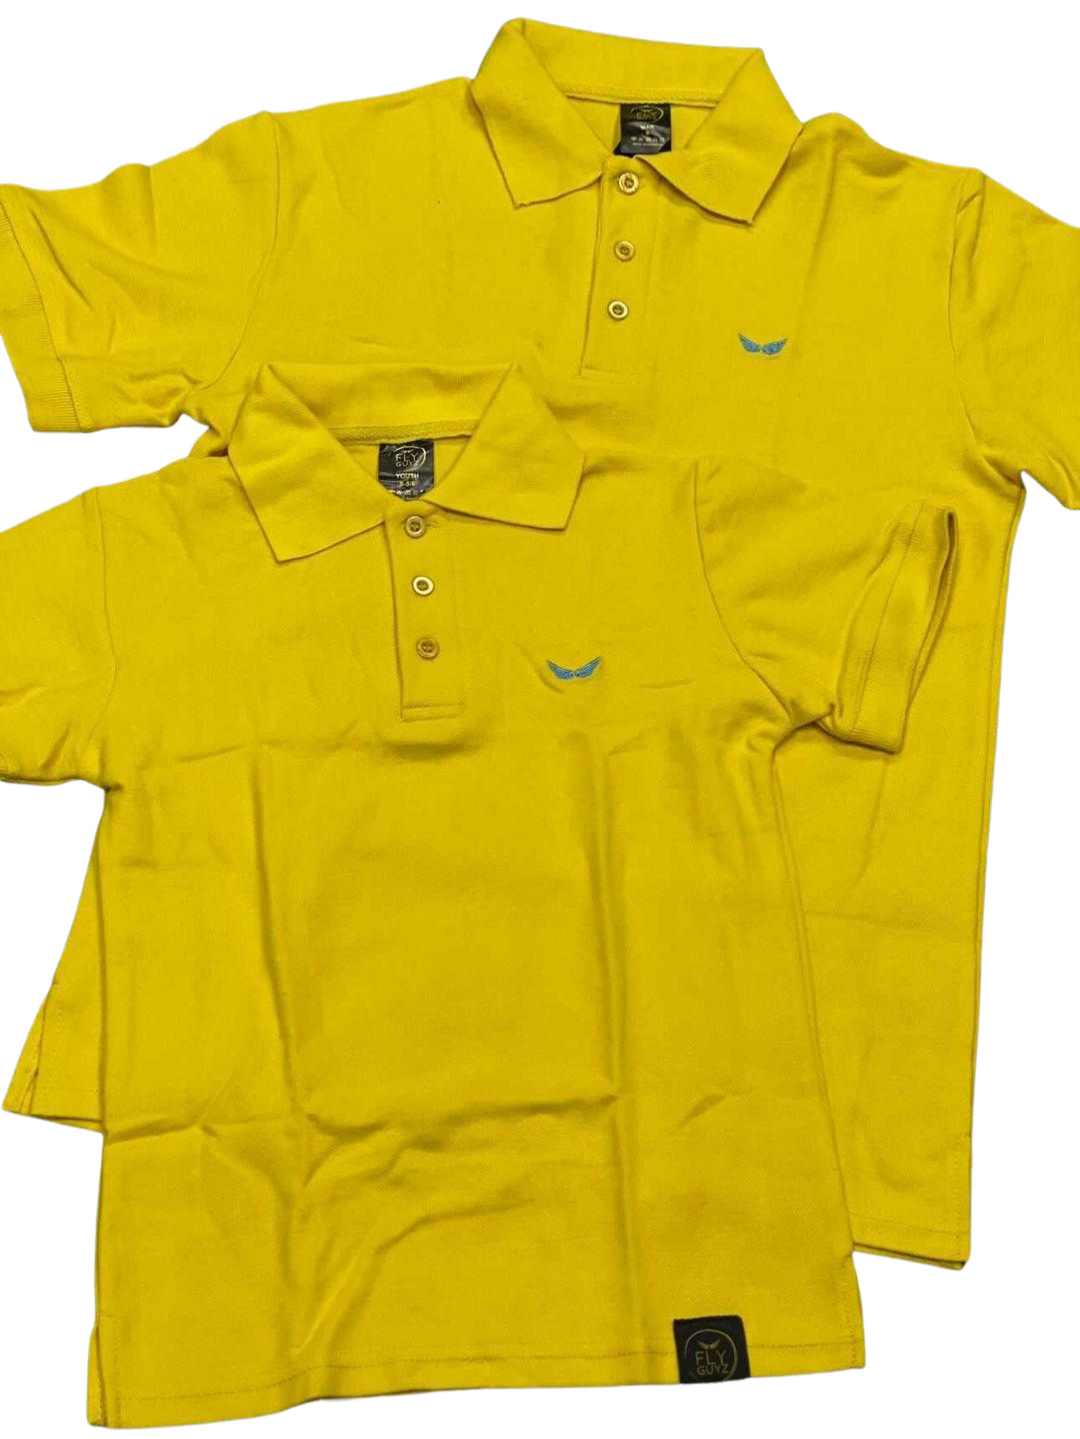 Classic Logo Polo T-Shirt (Boys) - FLY GUYZ